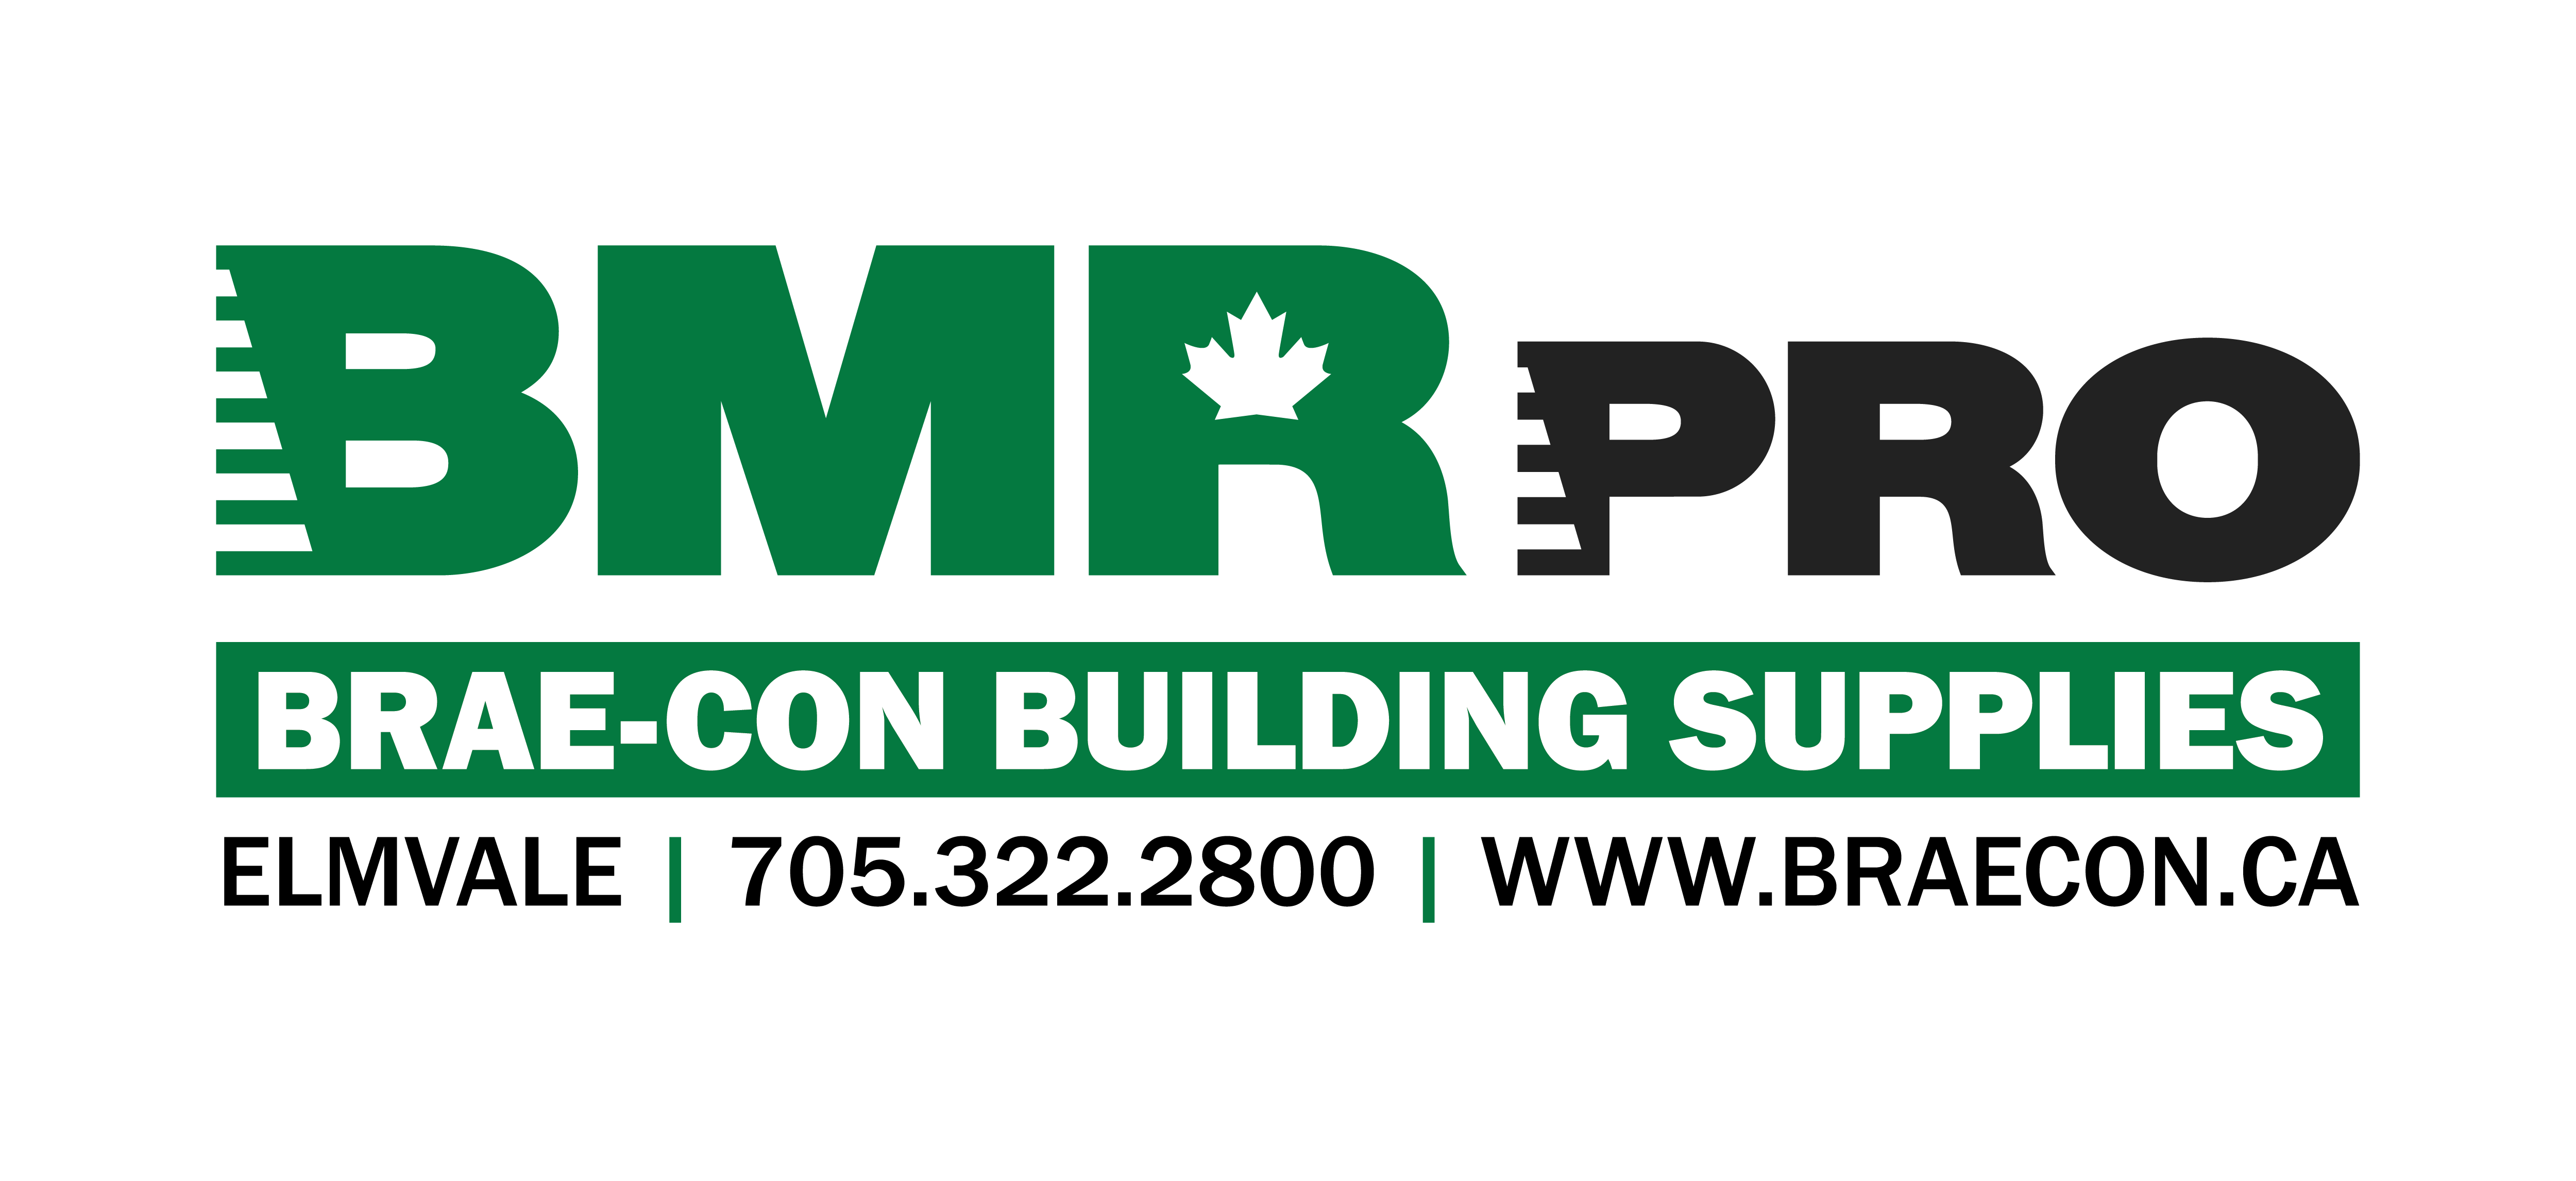 Brae-Con Building Supplies